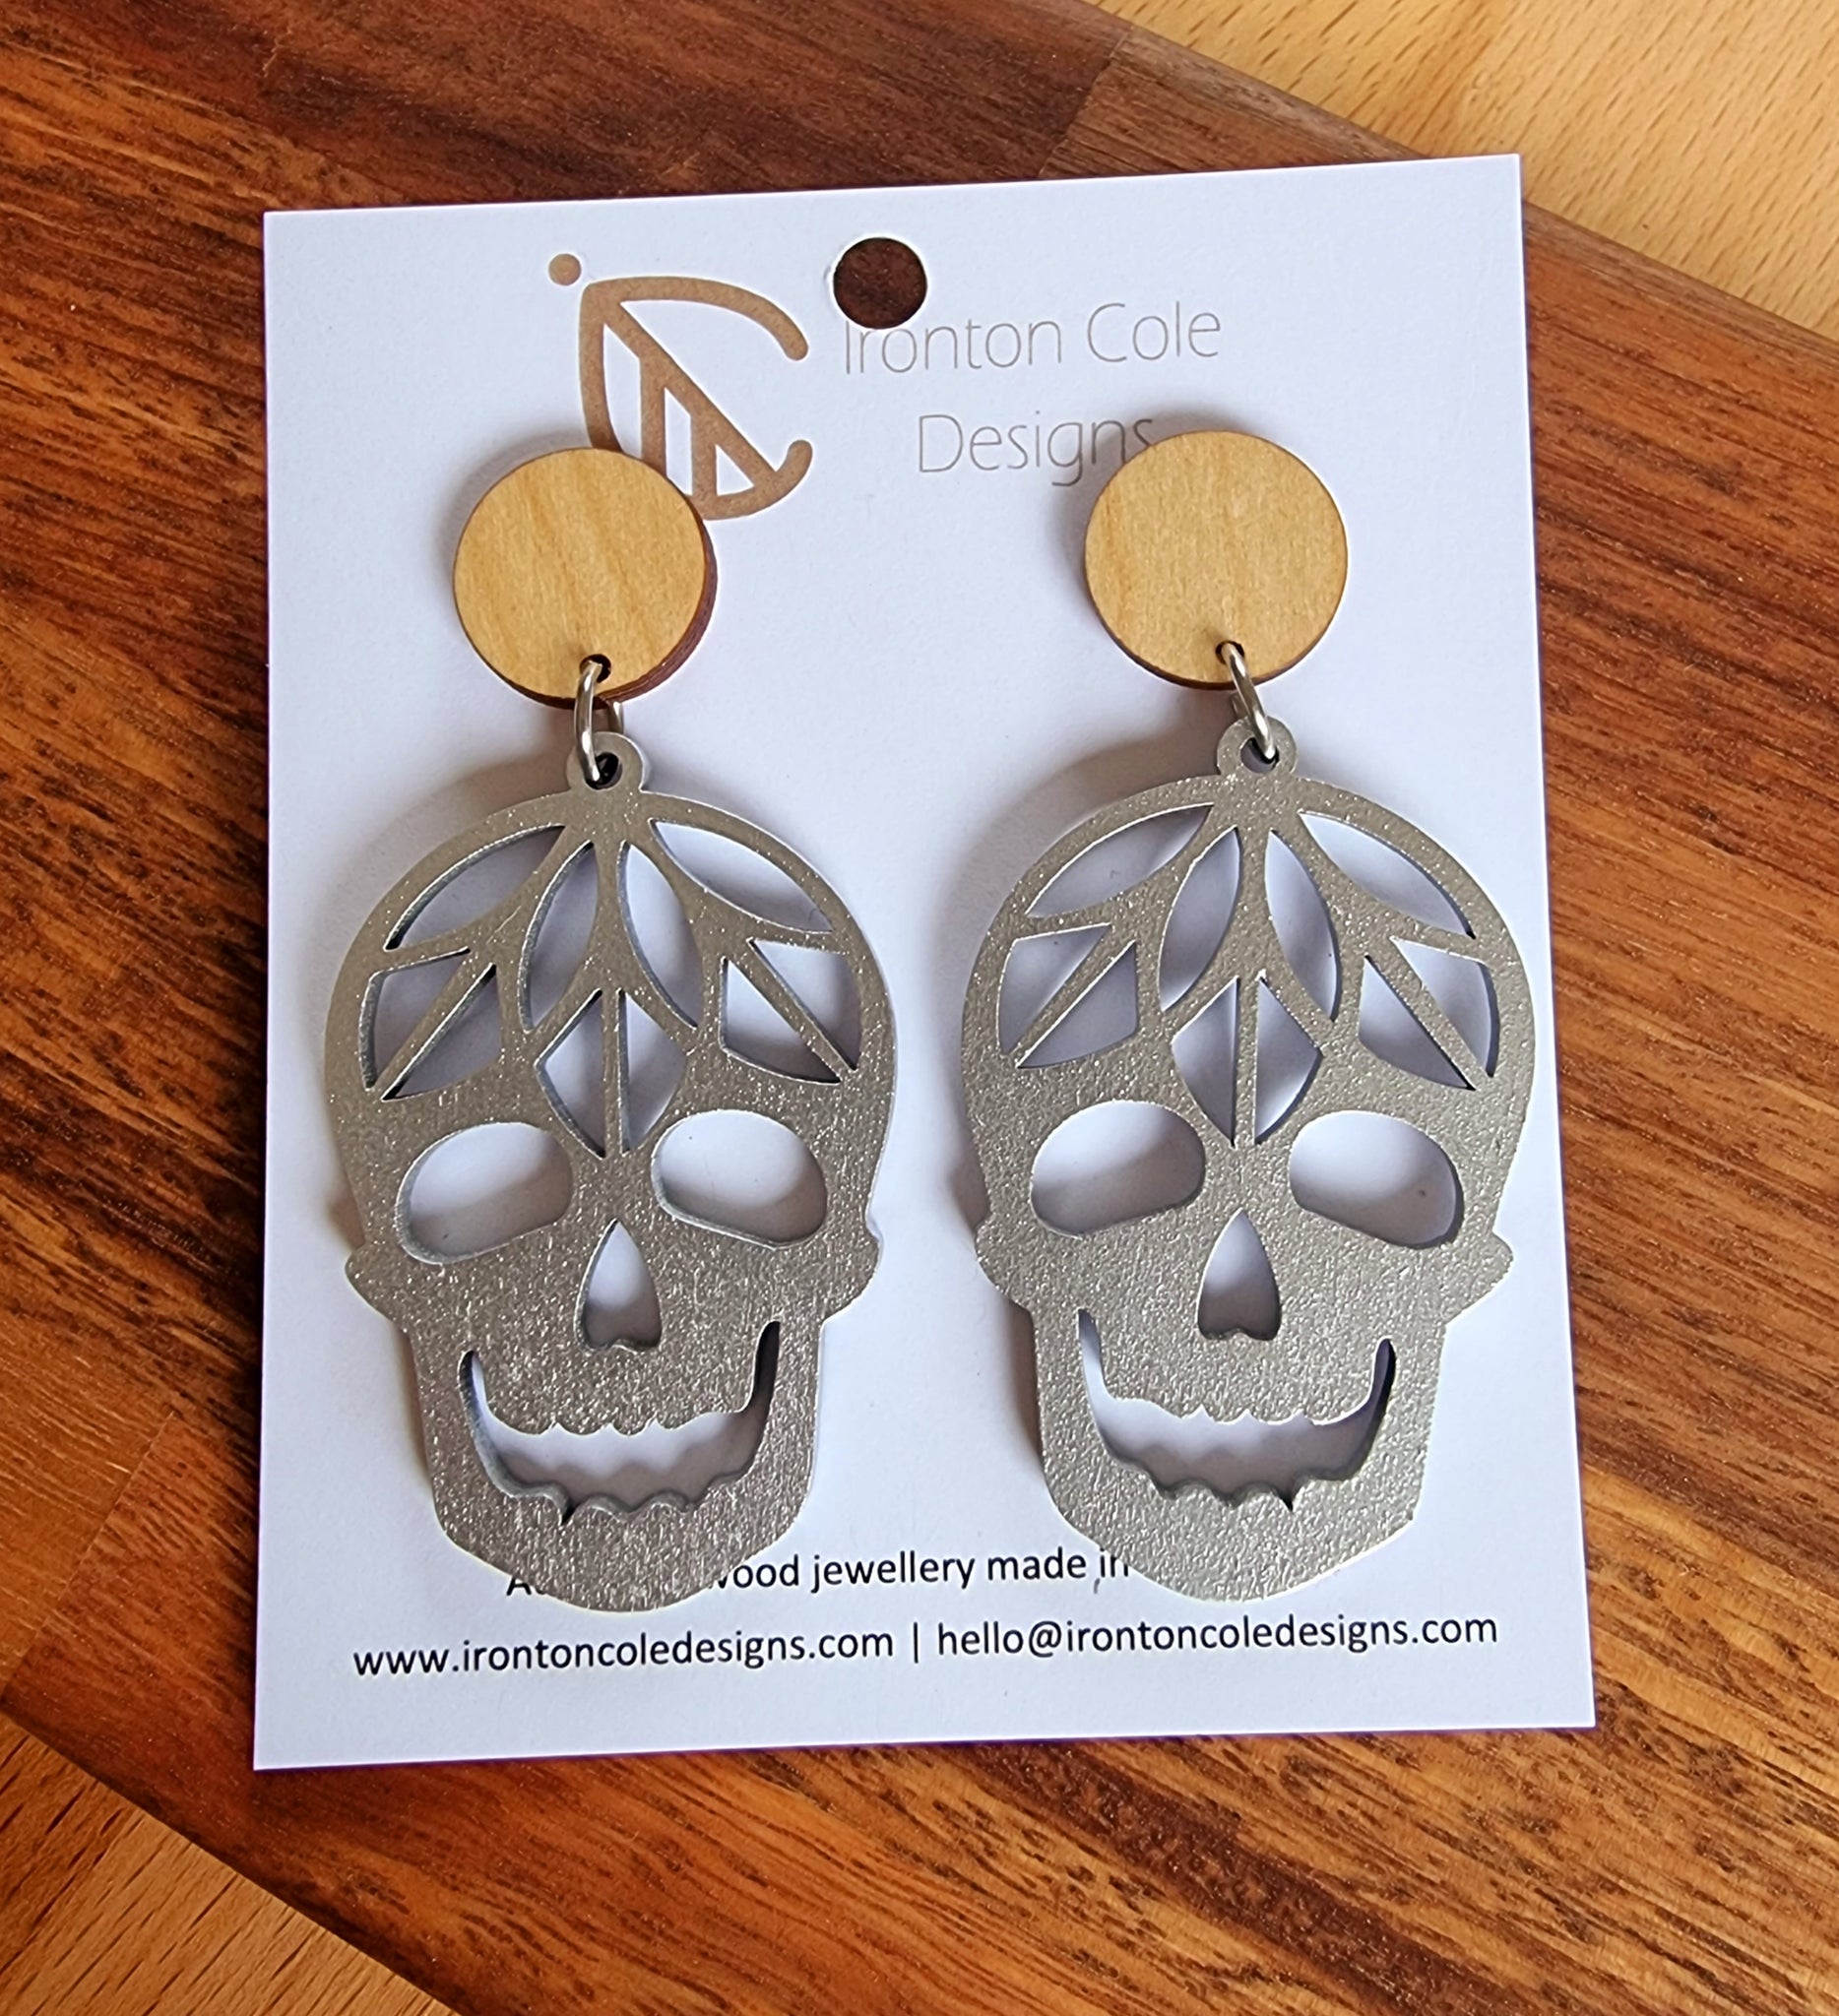 Skull wooden earrings